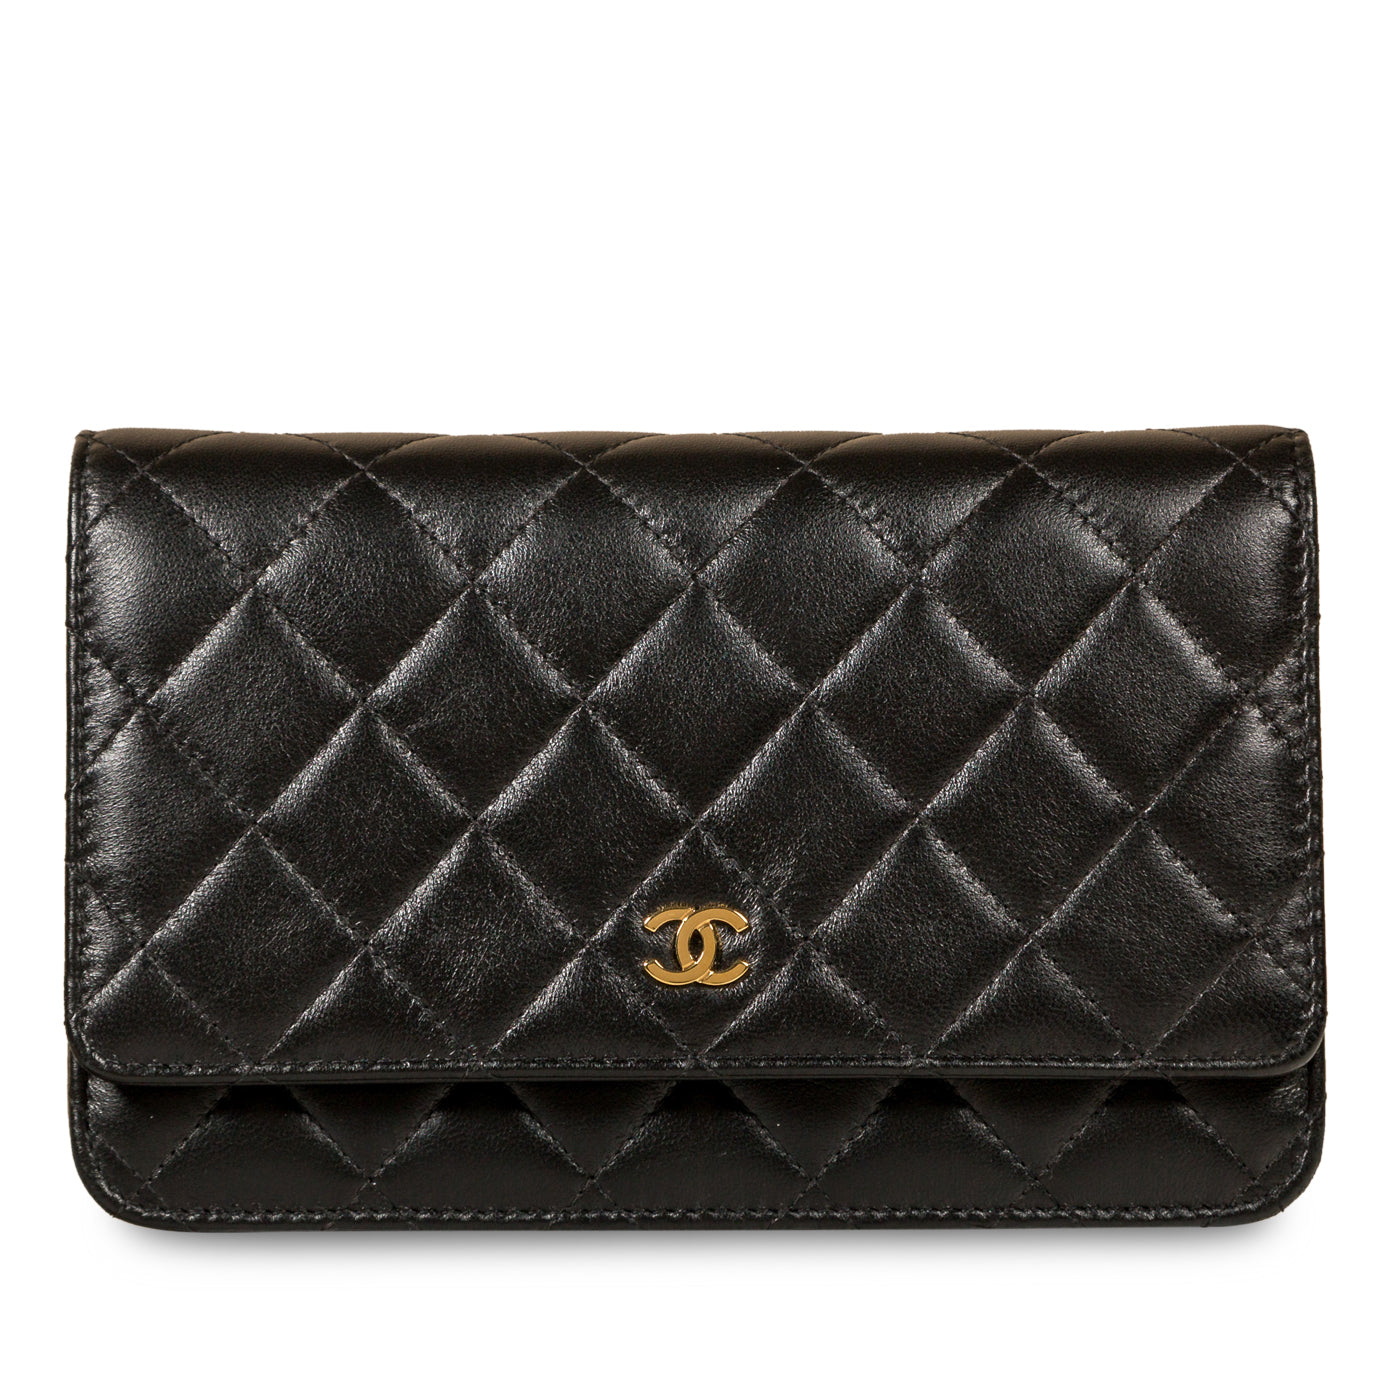 Chanel - Wallet on Chain - WOC - Lambskin - Black - GHW